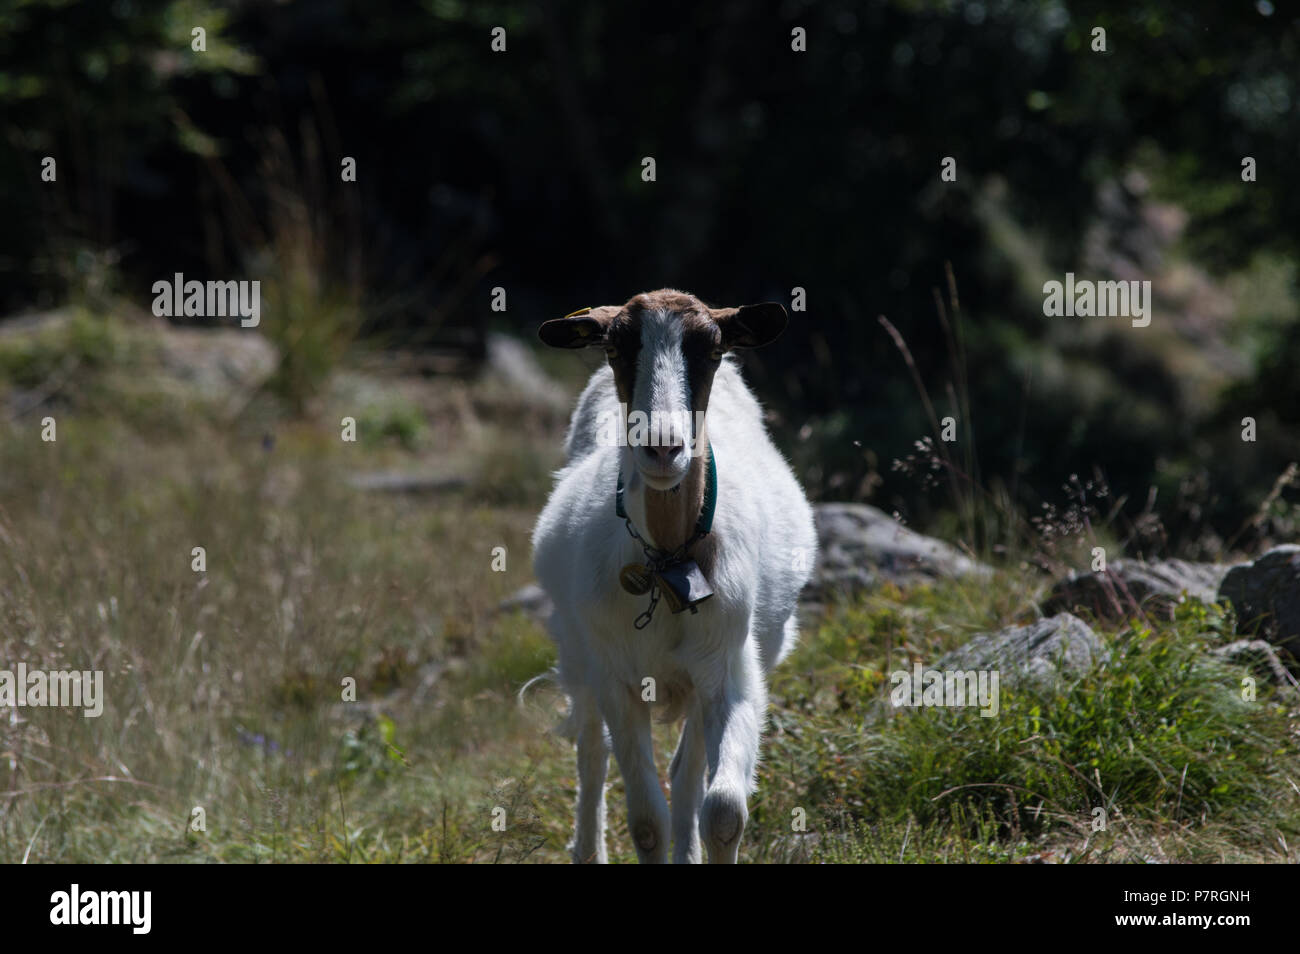 Photographié sur la chèvre des montagnes du Piémont, en Italie. Fotografata Capra sulle montagne del Lago Maggiore, Piemonte, Italie Banque D'Images